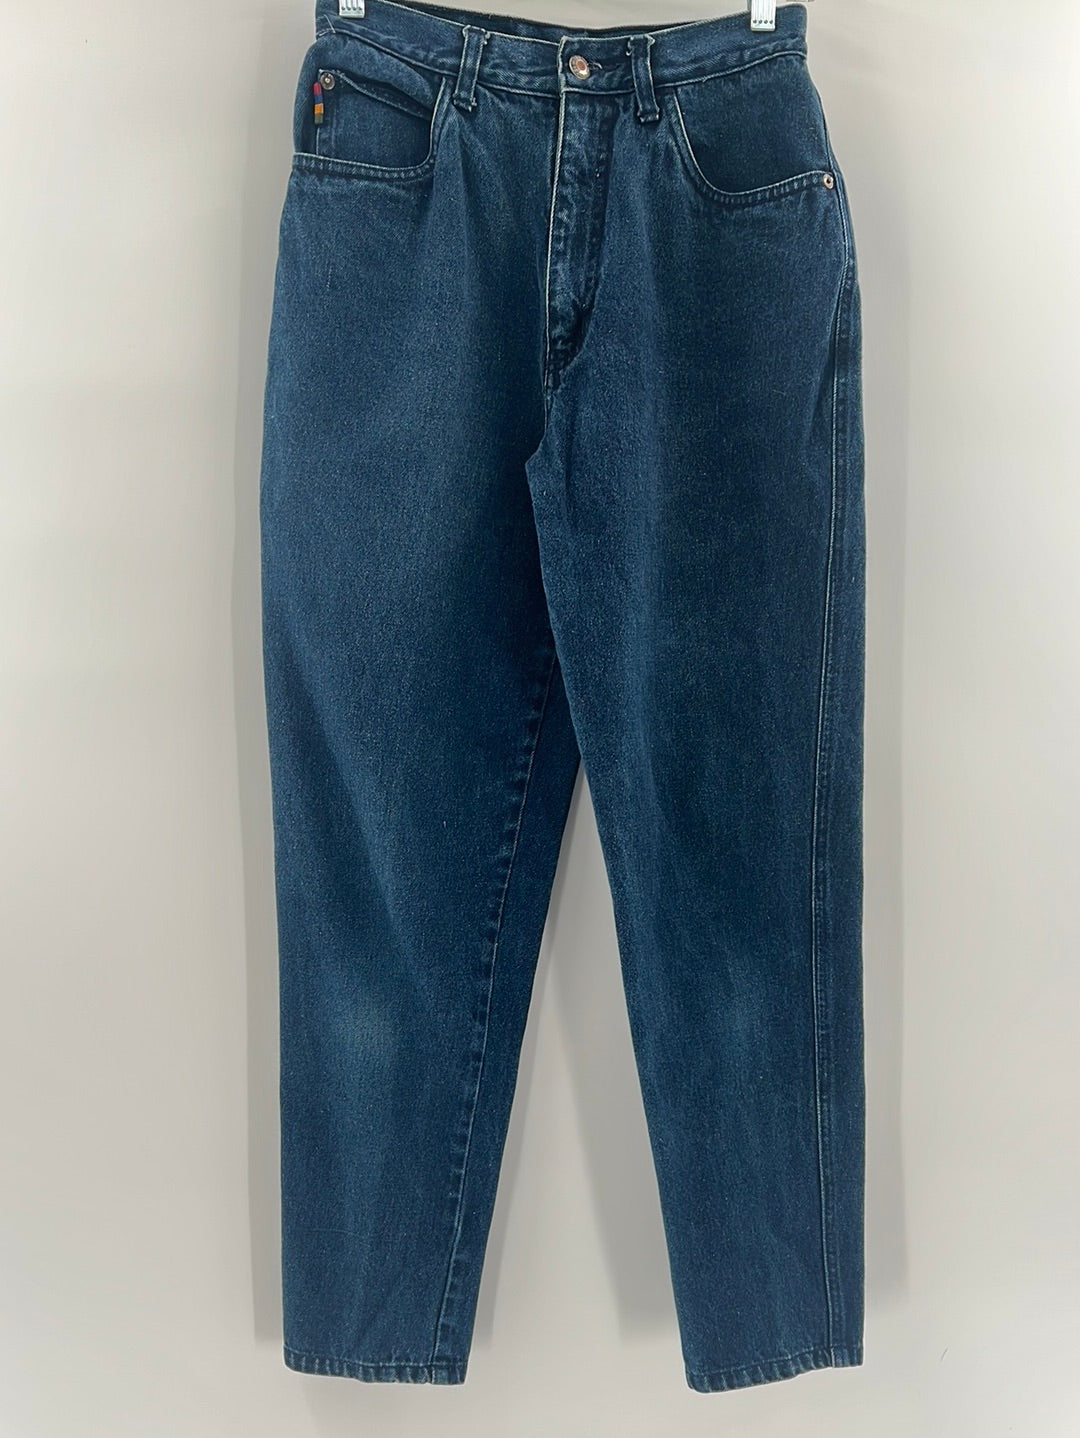 P S. Gitano 80’s Blue Jeans (Size 10)